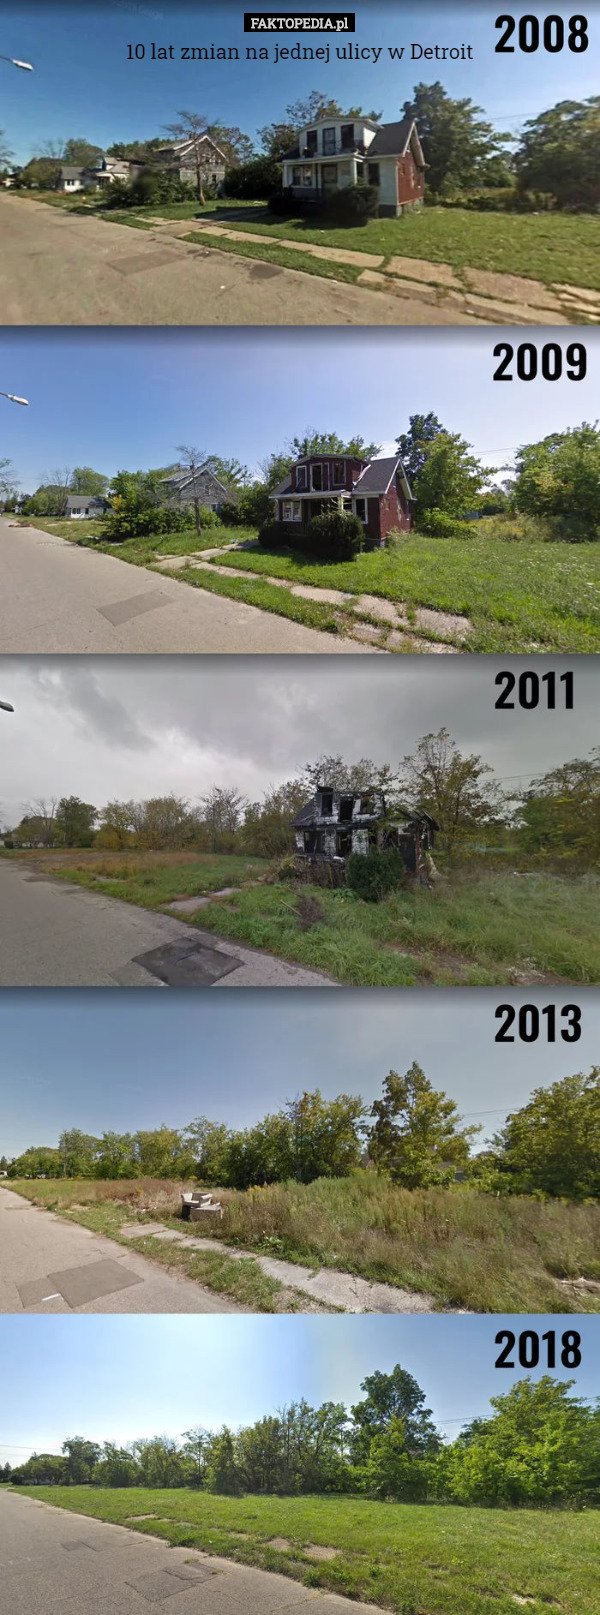 10 lat zmian na jednej ulicy w Detroit 